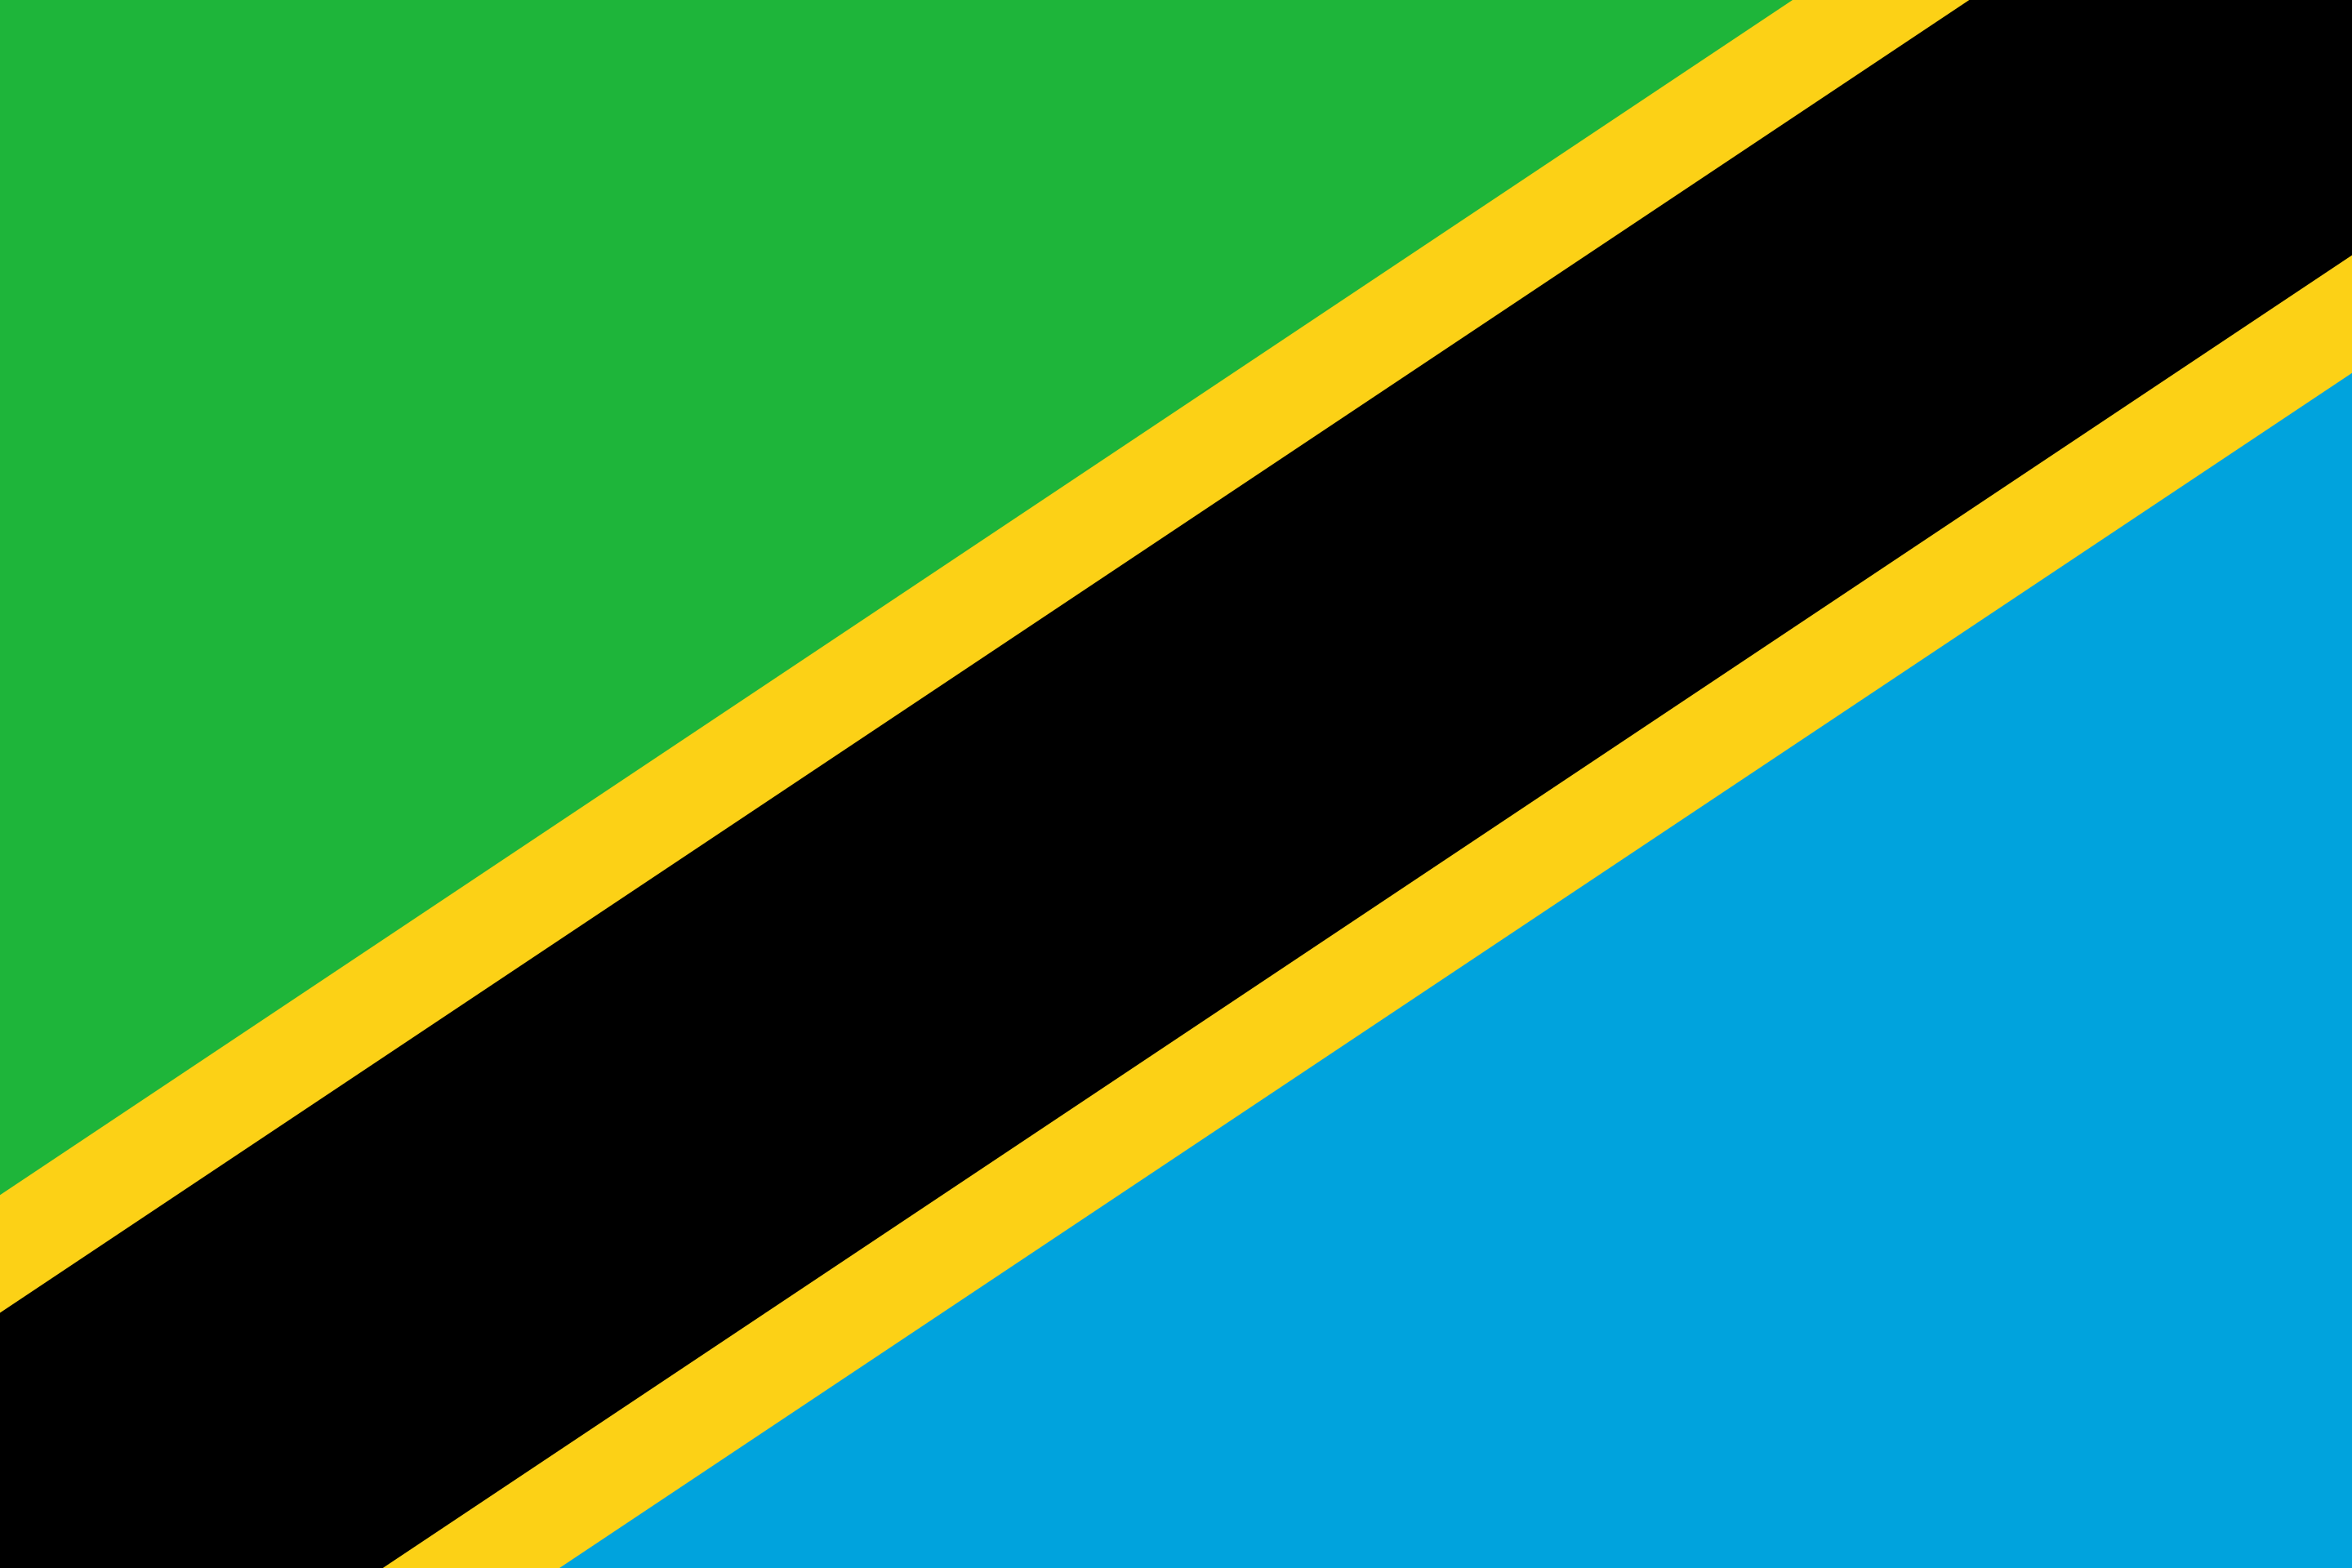 Drone Laws in Tanzania